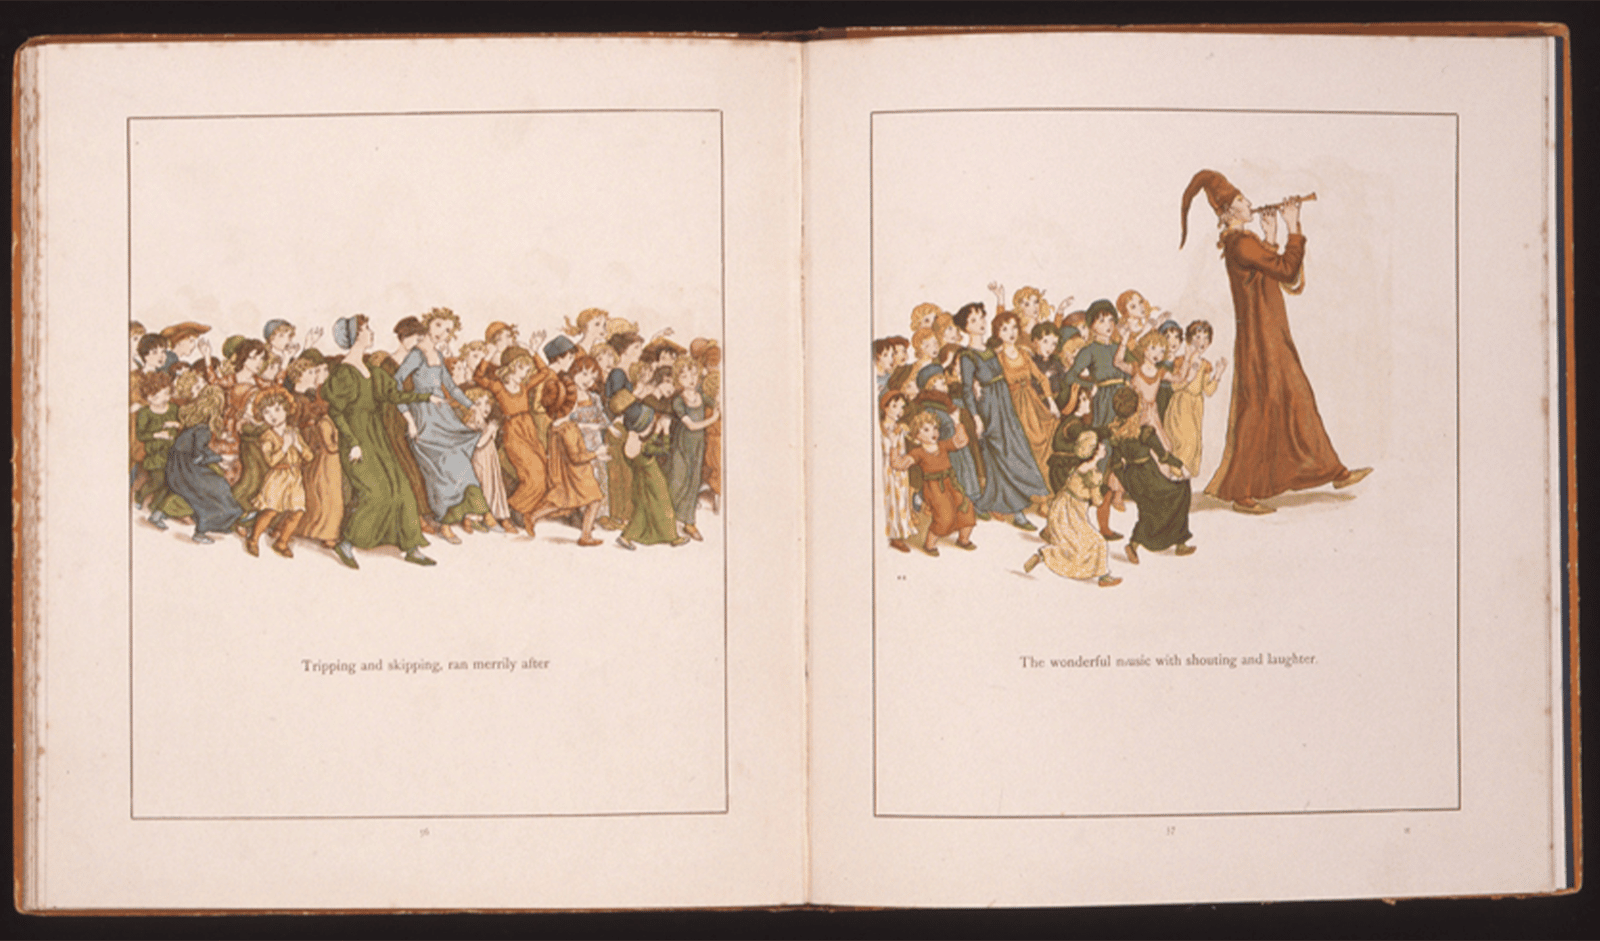 ロバート・ブラウニング著、ケイト・グリーナウェイ画『ハーメルンの笛吹き』(1888年刊、栃木県立美術館蔵）。多くの色を使い、躍動感あふれる群像を描いている絵本。ケイト・グリーナウェイも当時の人気作家のひとり。